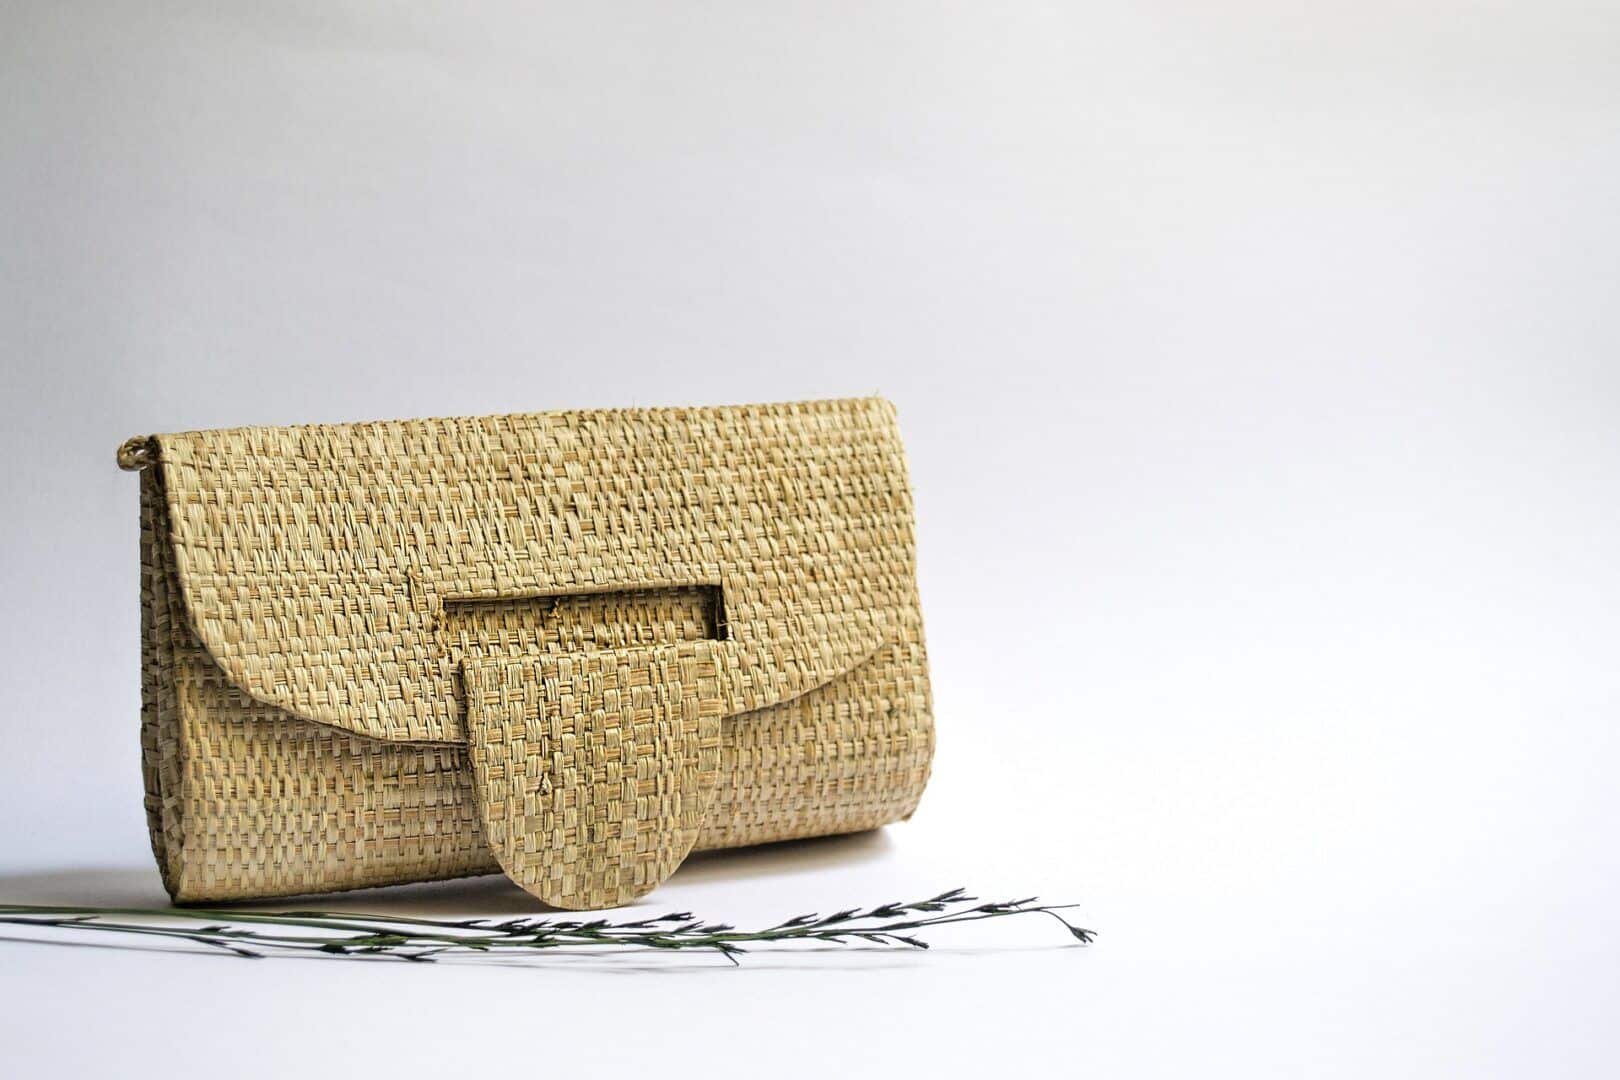 fashion Straw or raffia bag – Use, models + inspirations